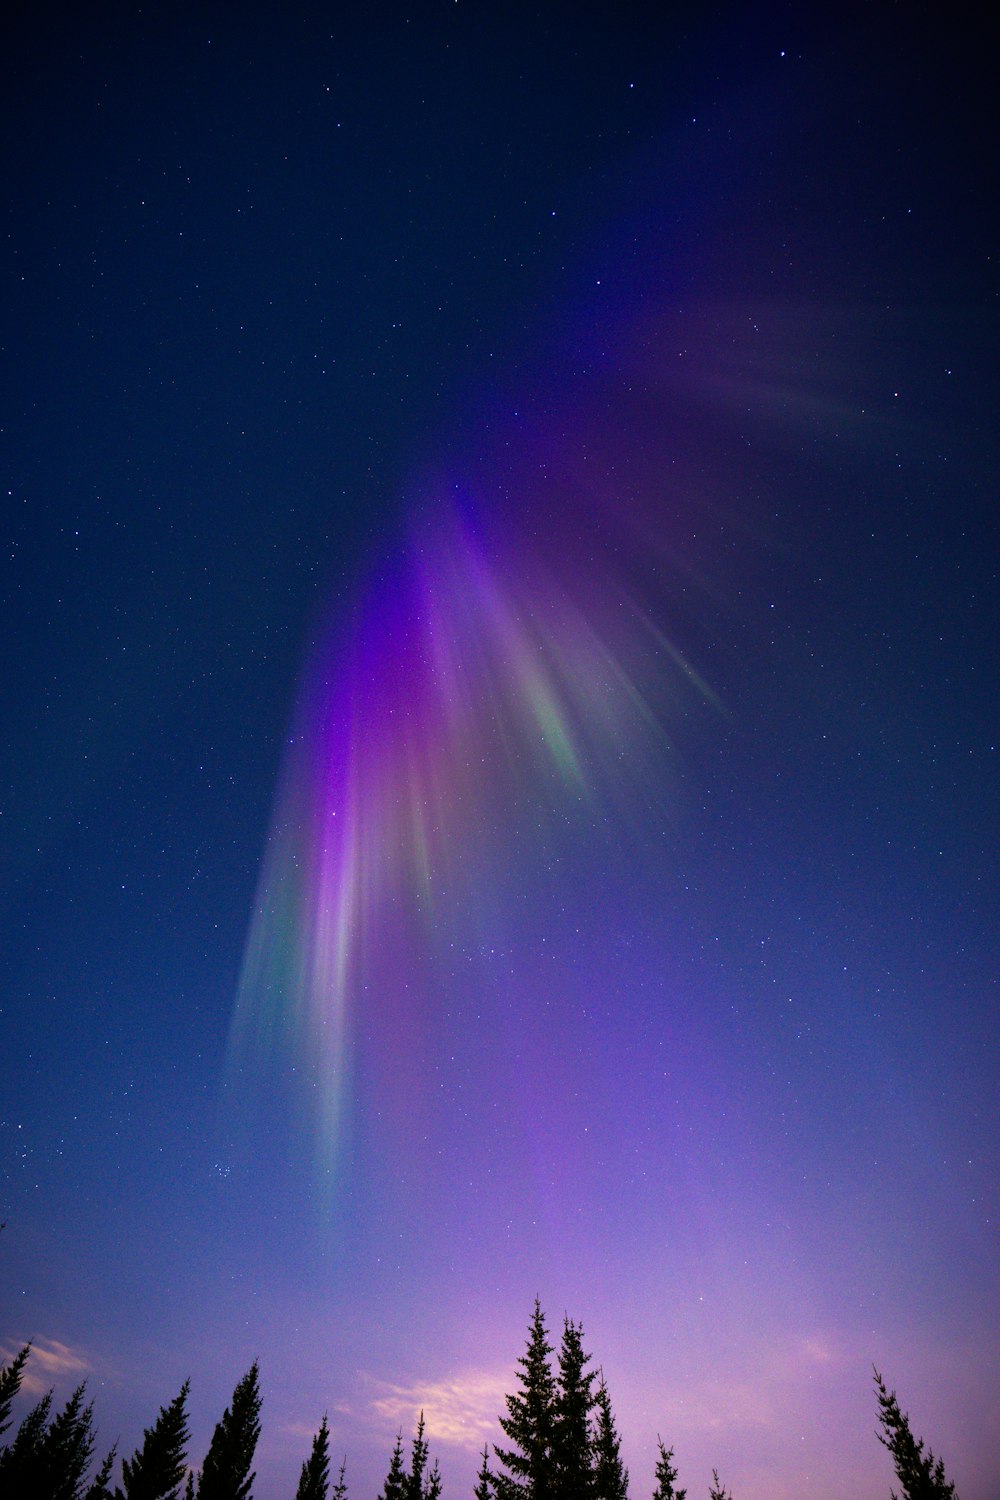 a bright purple and green aurora bore in the night sky